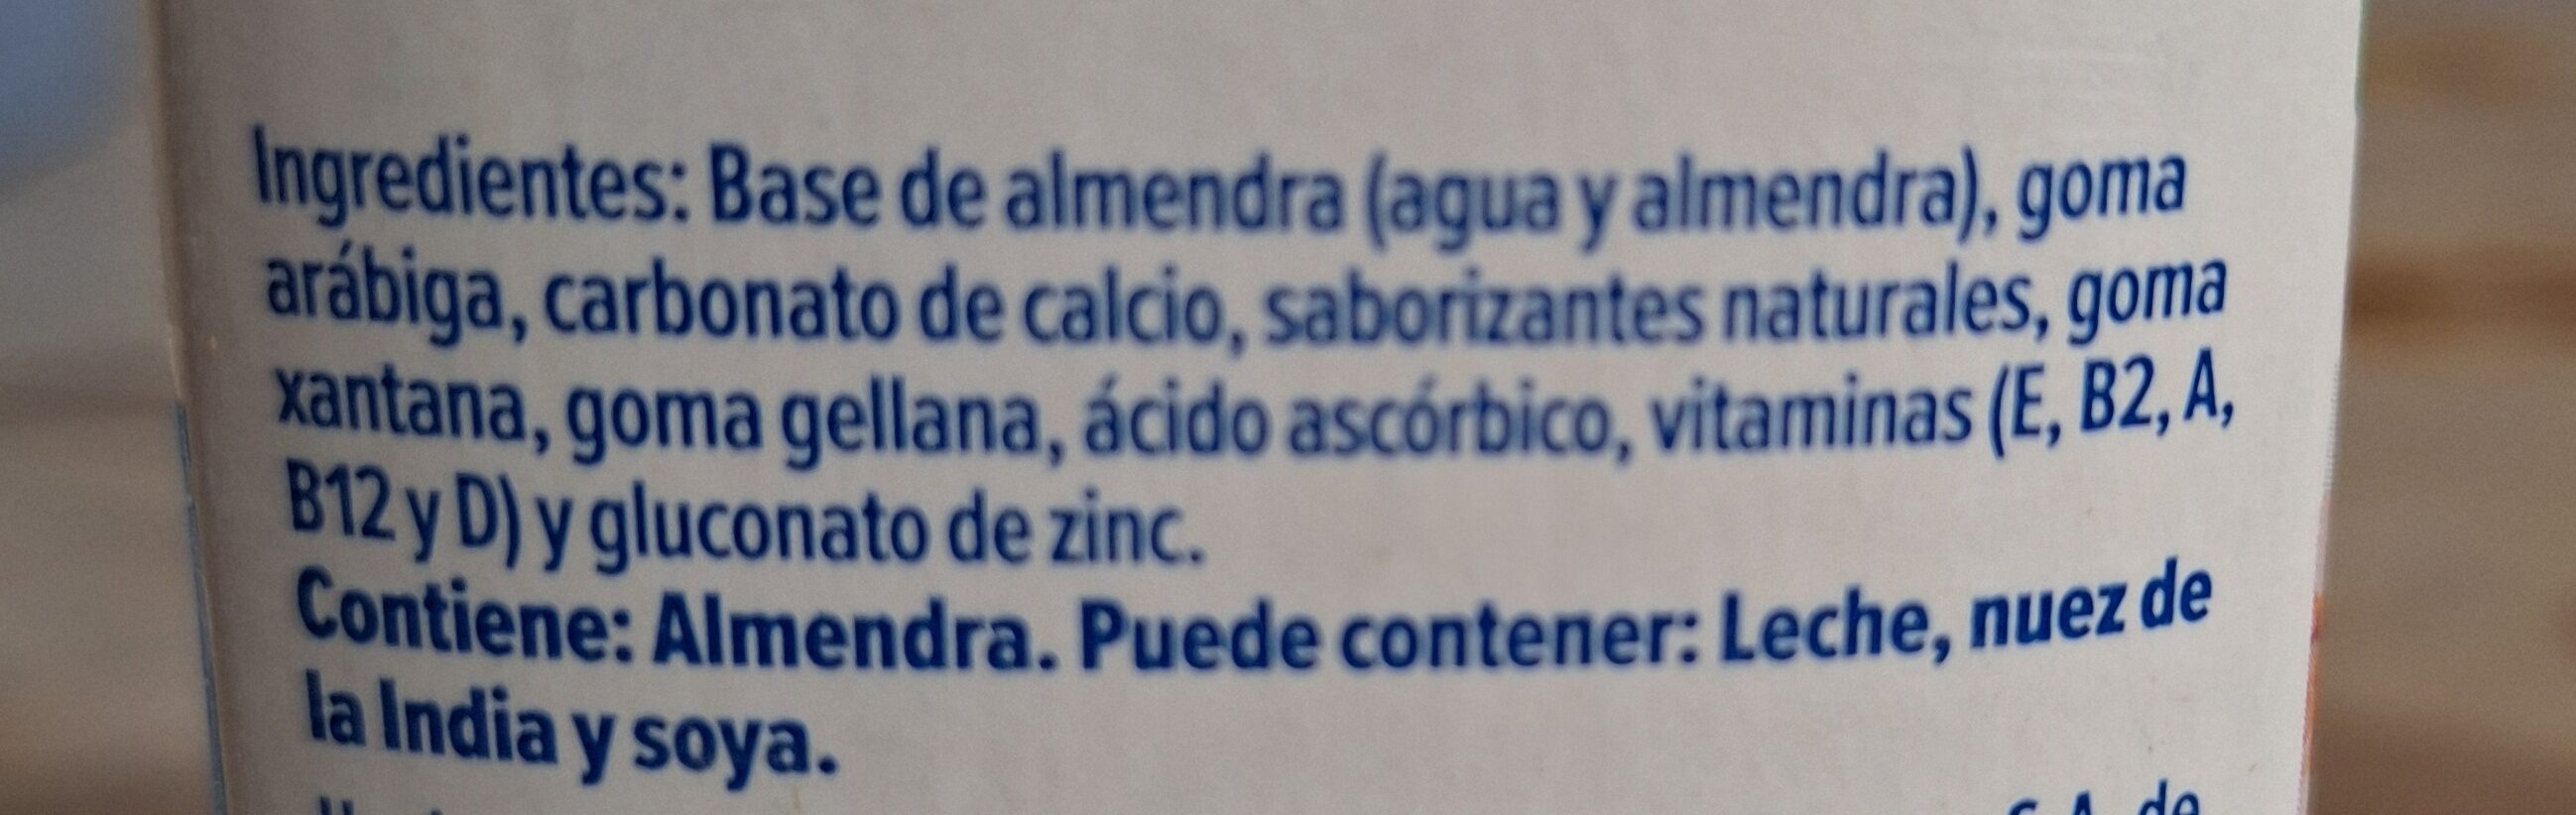 SILK - Bebida de Almendra s/azúcar - Ingredientes